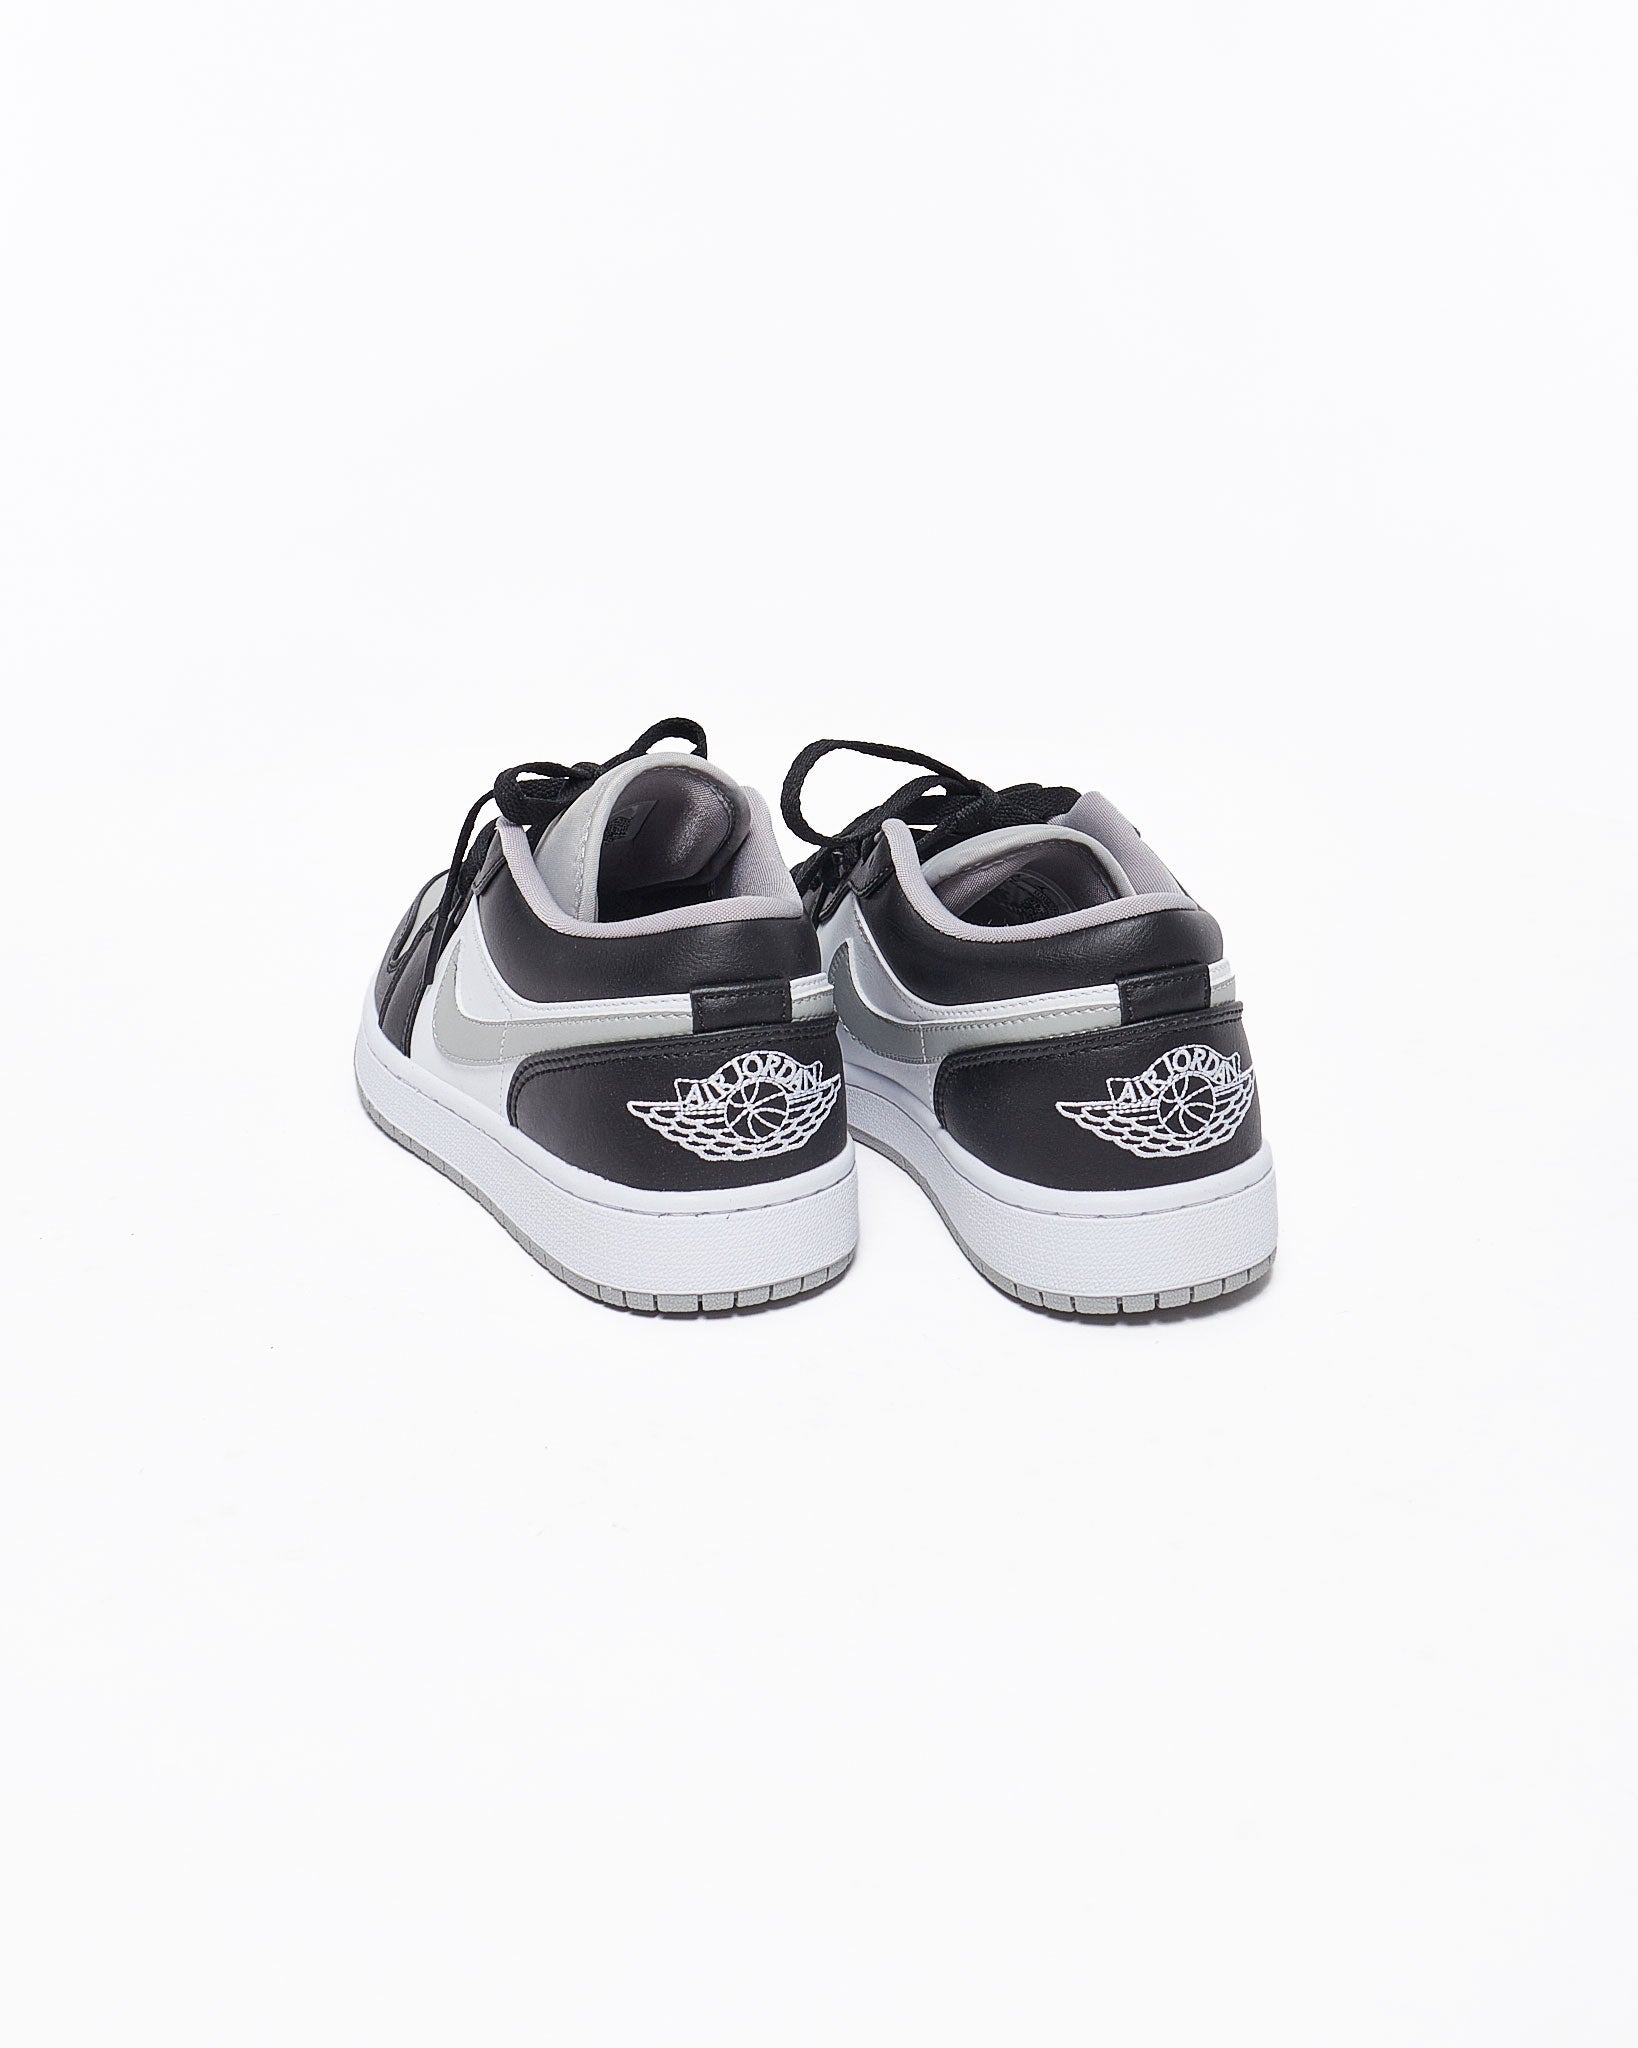 MOI OUTFIT-Air Jordan Low Men Shoes 74.90